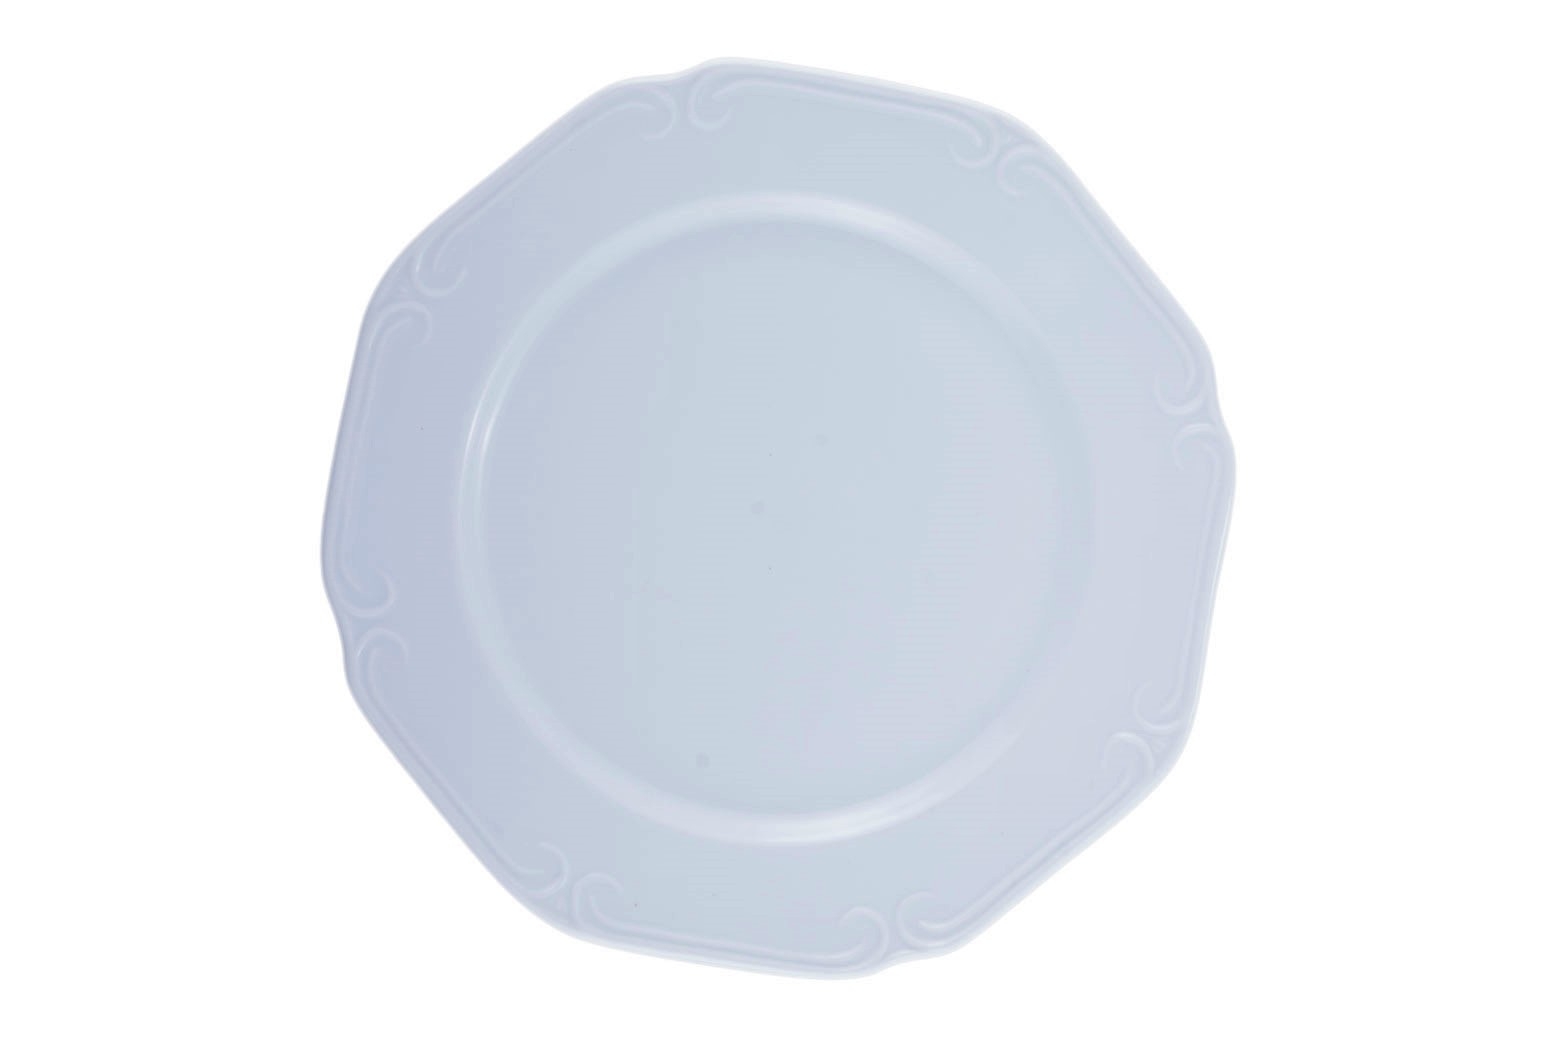 Πιάτο Ρηχό Πορσελάνης White PW7 Toscany Oriana Ferelli 27εκ. PRPW070001 (Σετ 6 Τεμάχια) (Υλικό: Πορσελάνη, Χρώμα: Λευκό, Μέγεθος: Μεμονωμένο) – Oriana Ferelli – PRPW070001